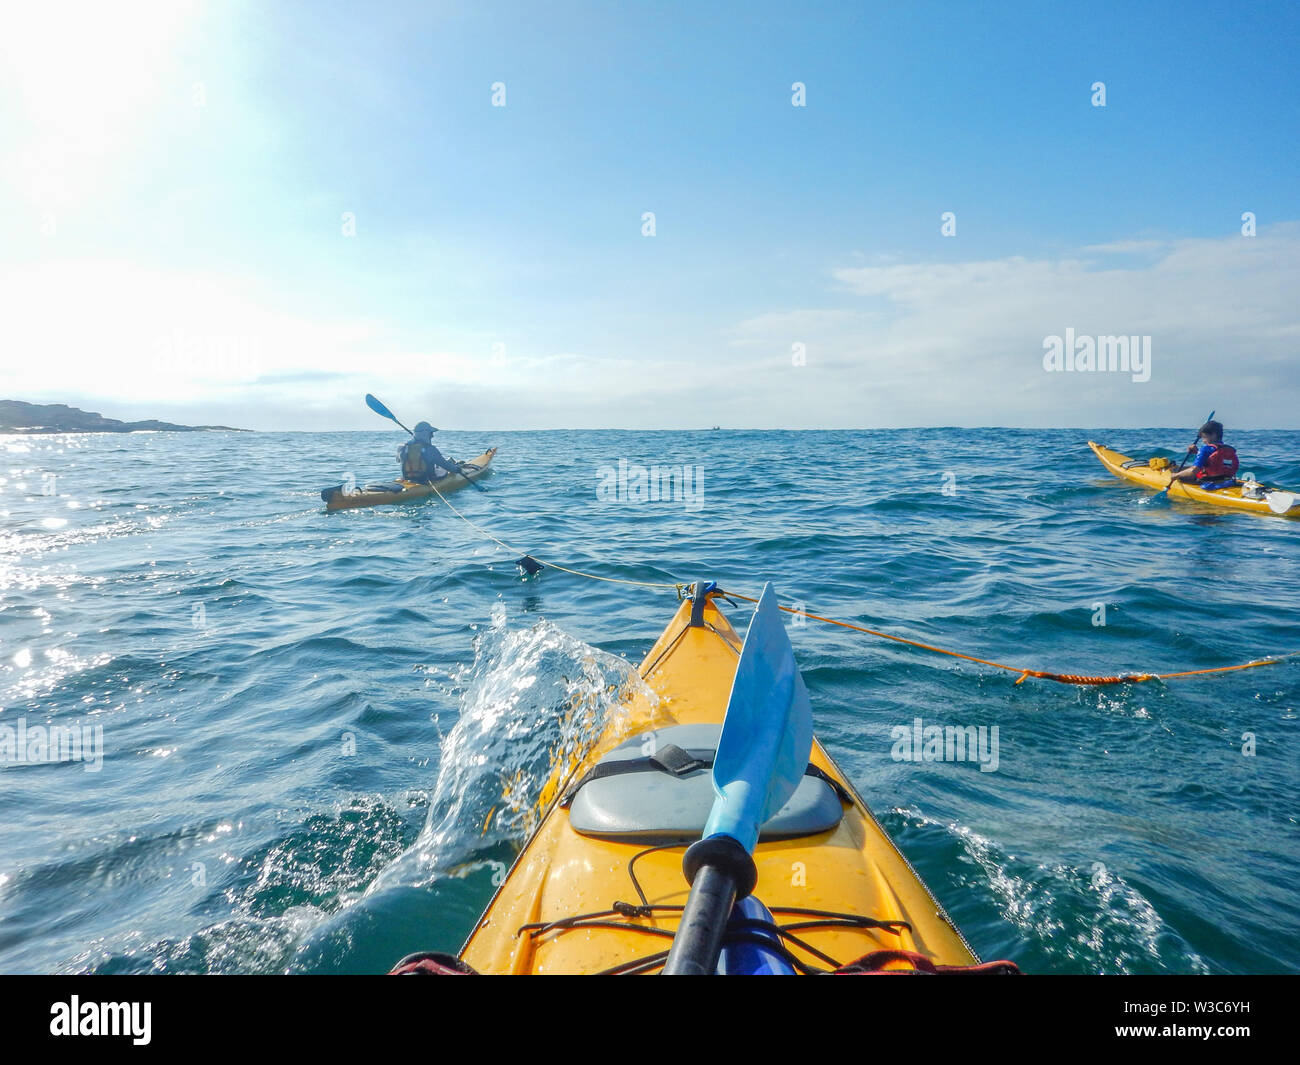 Kayak towing practice during tour, Batemans Bay, NSW, Australia Stock Photo